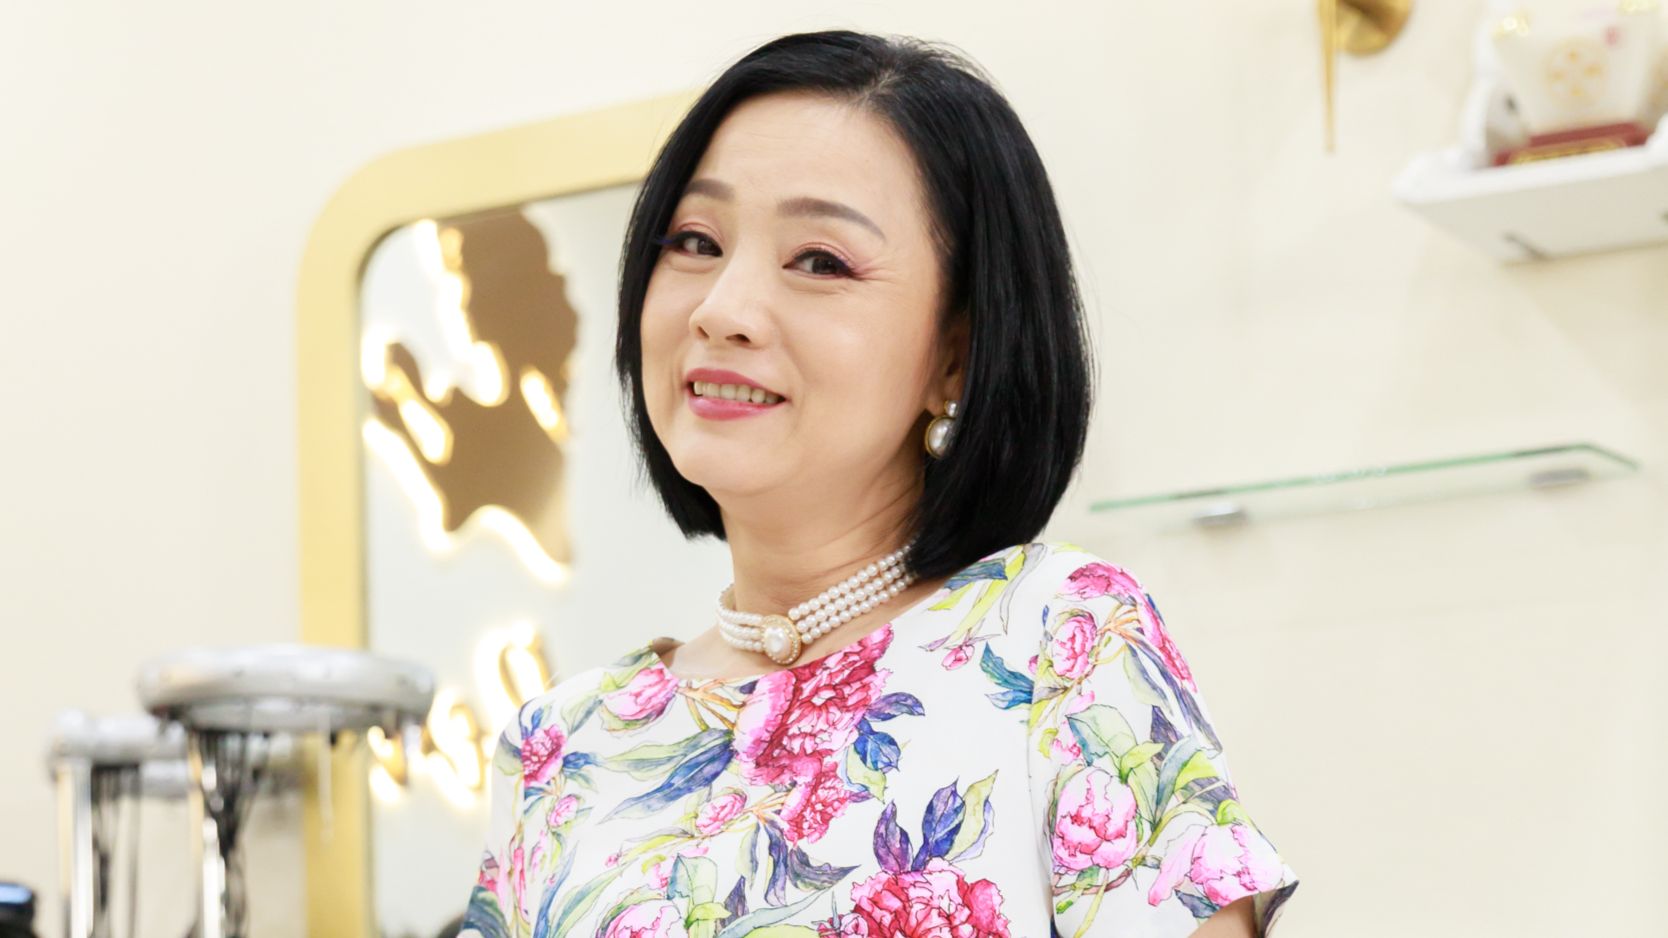 Tượng đài nhan sắc sở hữu đôi mắt đẹp nhất màn ảnh Việt, khiến 2 triệu người 